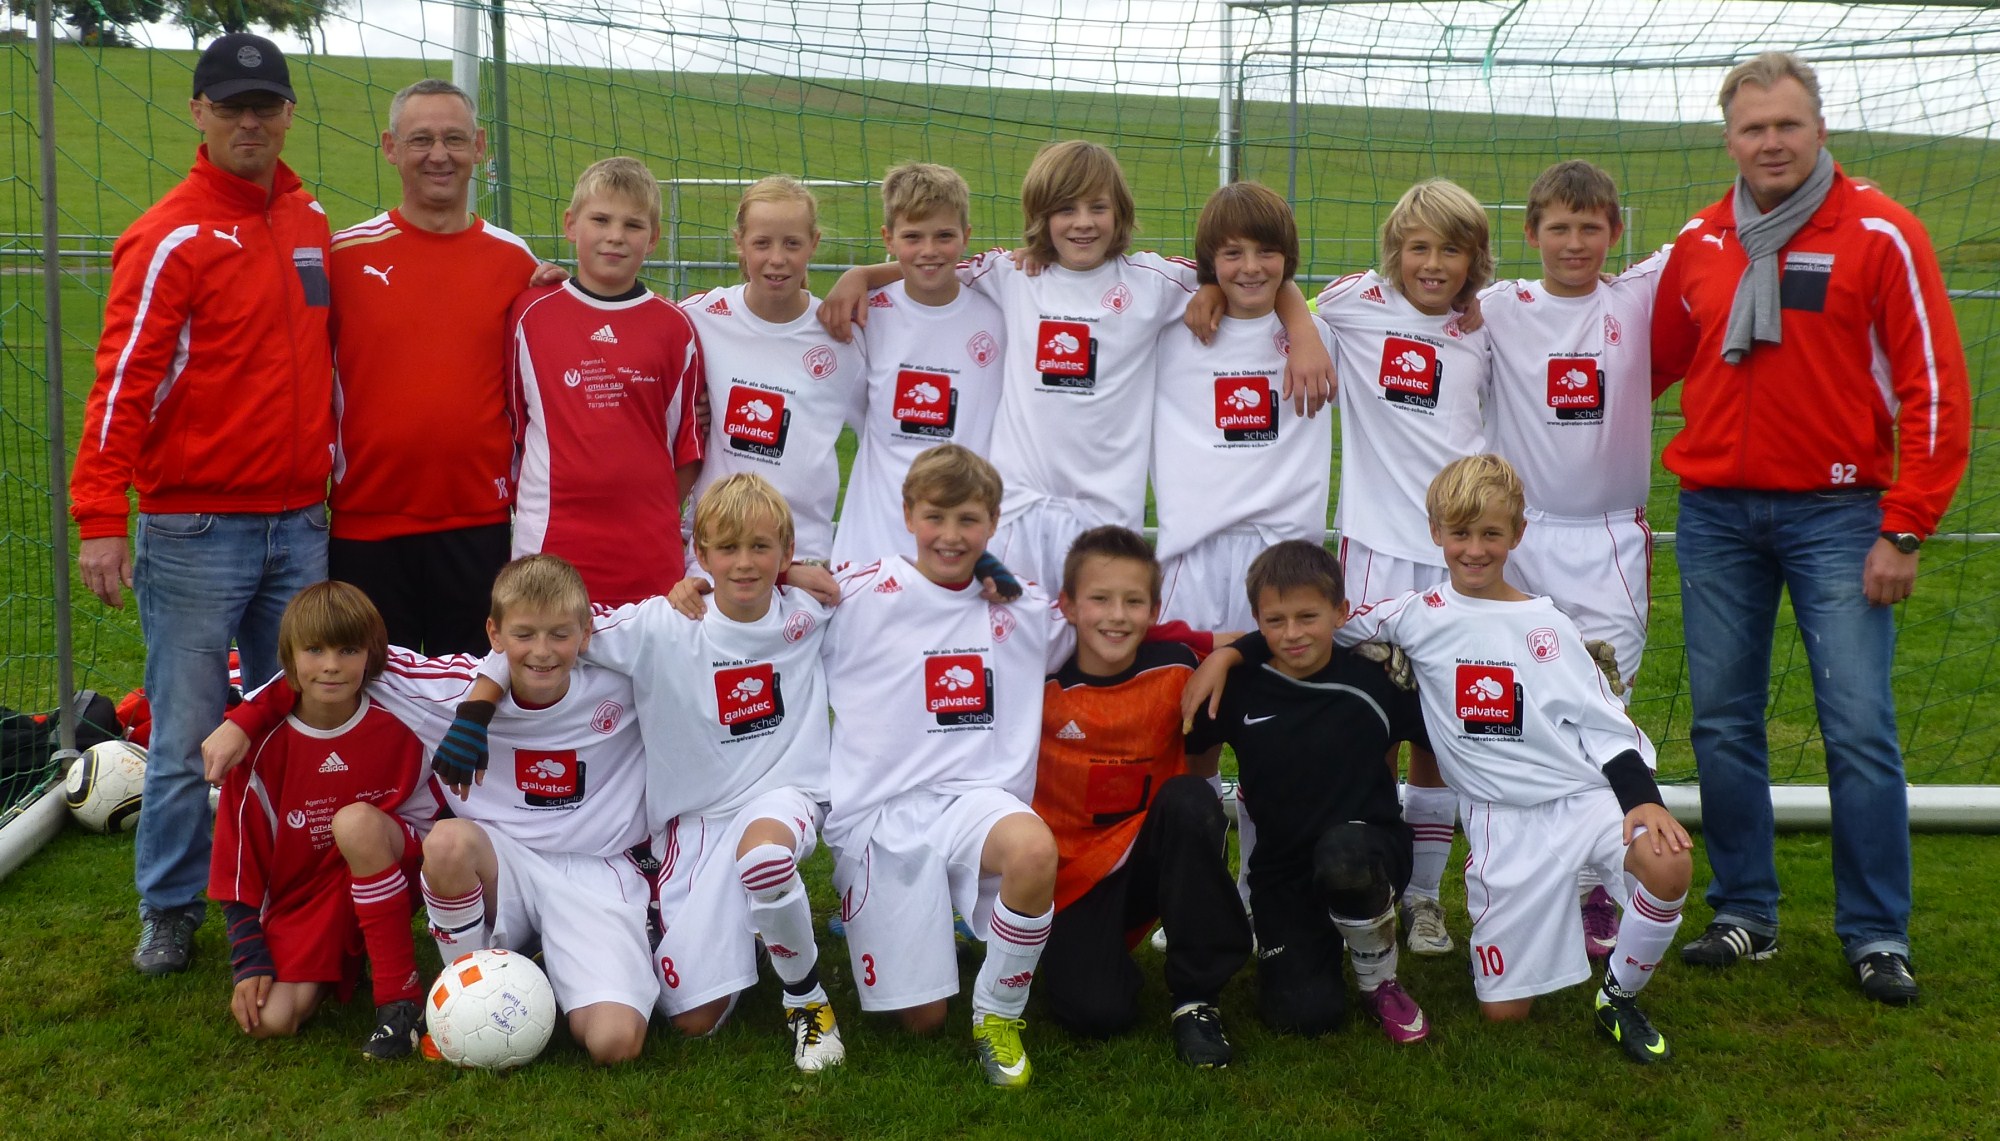 Die D1-Junioren der SGM Lauterbach / Hardt Saison 2012/2013